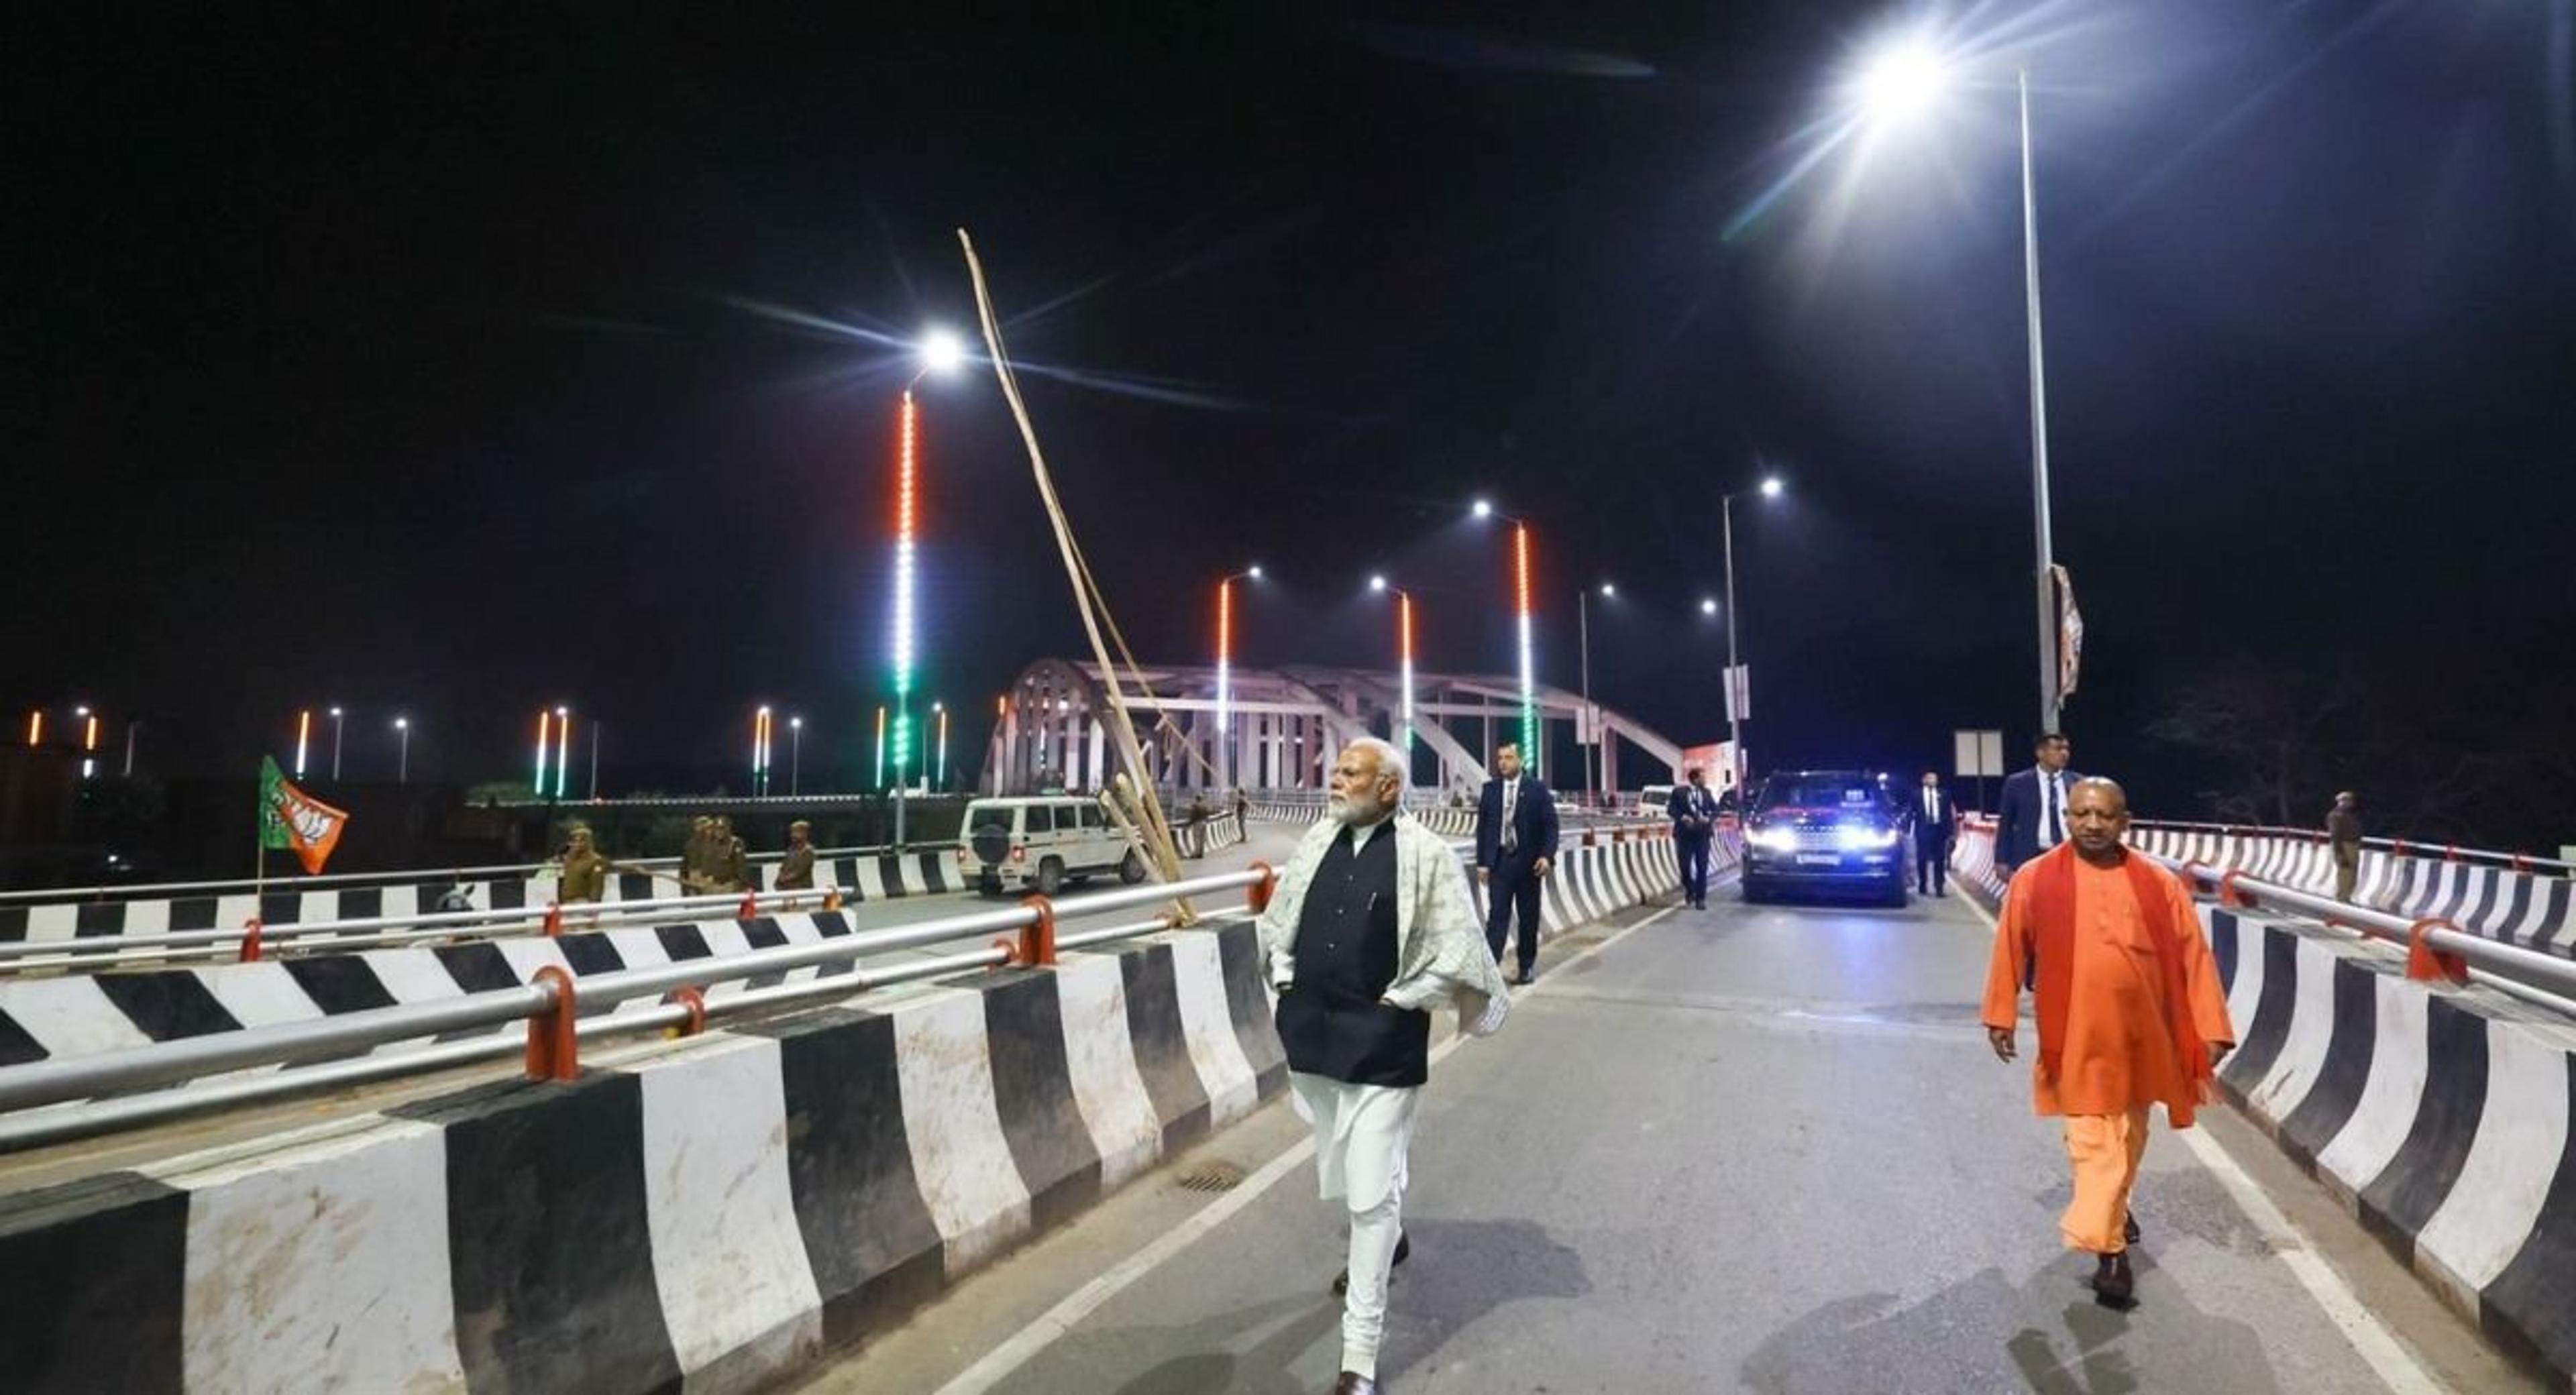 PM Modi Varanasi Visit: फुलवरिया फ्लाईओवर पर अचानक गाड़ी से उतरे PM मोदी और चलने लगे पैदल, चौंके लोग